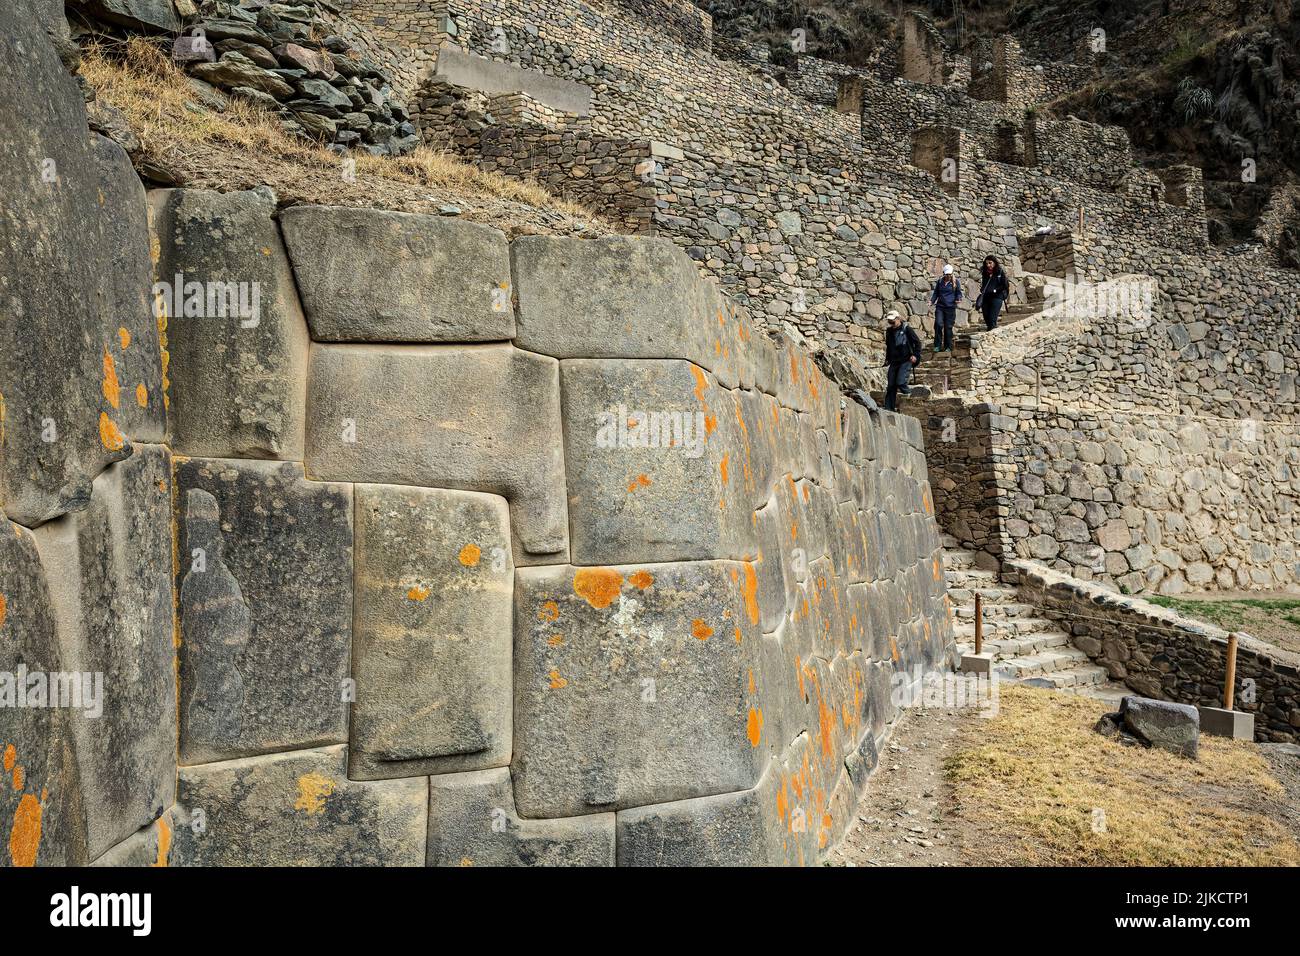 Murs de pierre et personnes sur les escaliers, ruines d'Ollantaytambo Inca, Ollantaytambo, Urubamba, Cusco, Pérou Banque D'Images